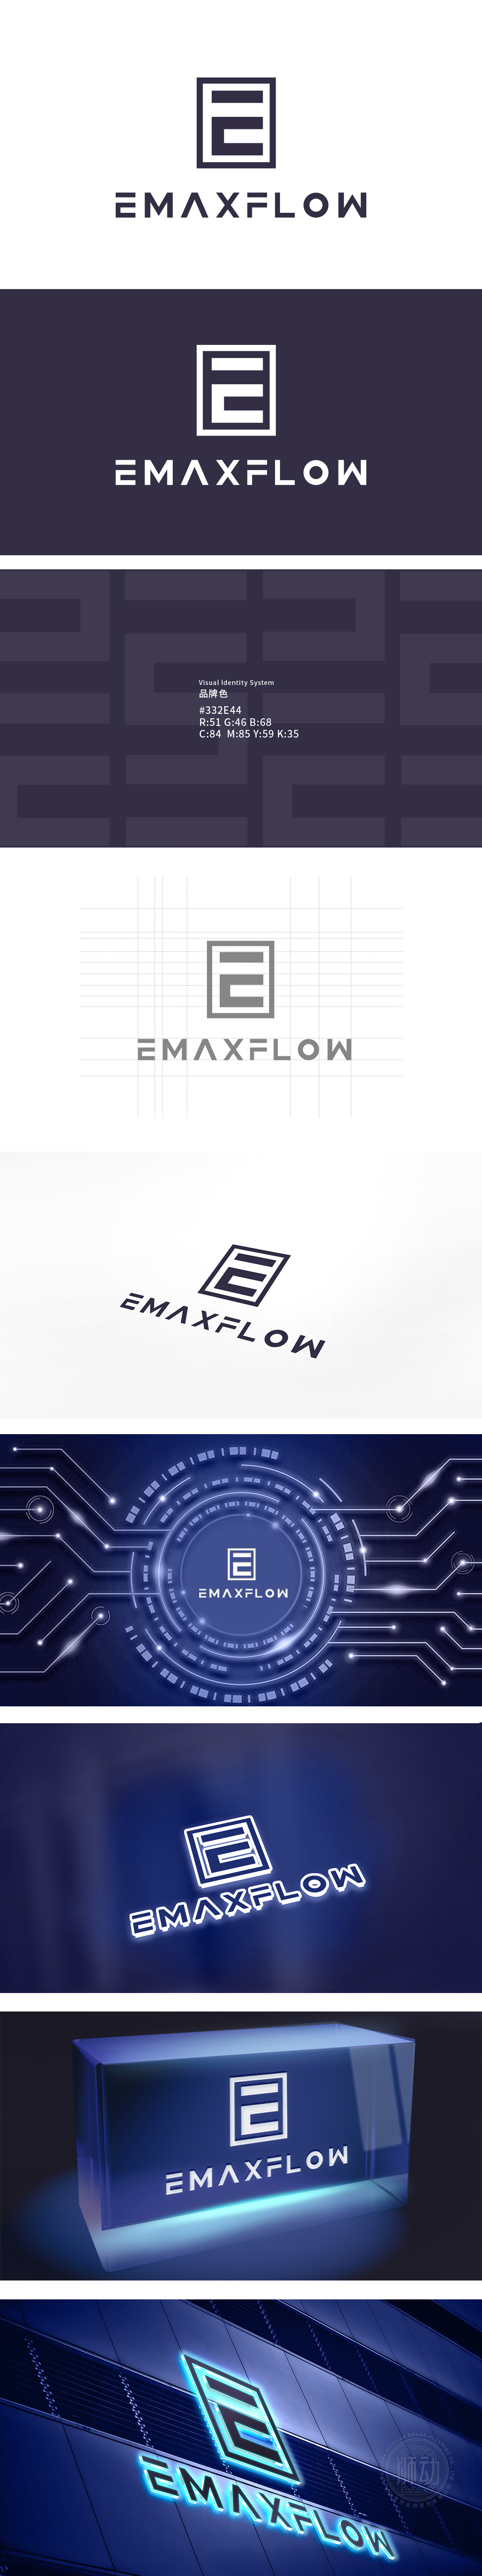 EMAXFLOW	电子/家电产品	LOGO设计